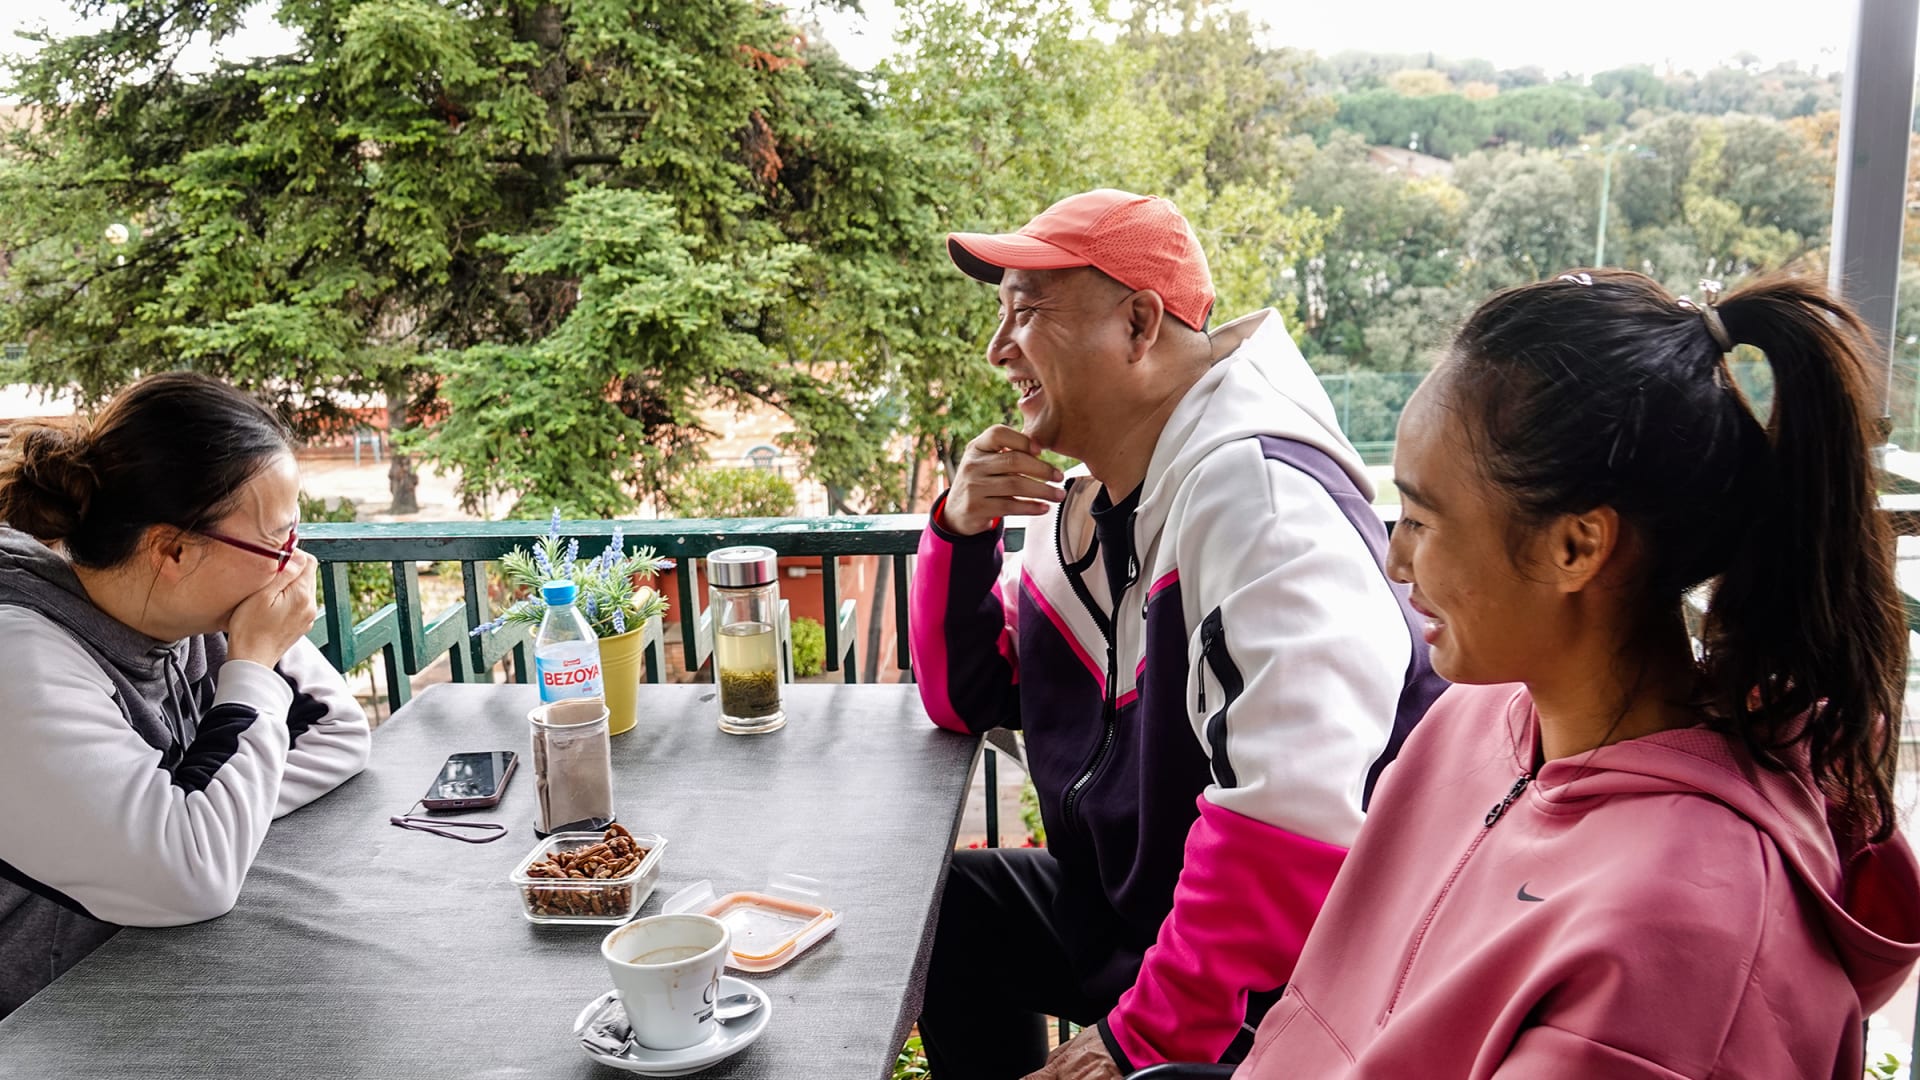 Qinwen Zheng Family Having Coffee Together